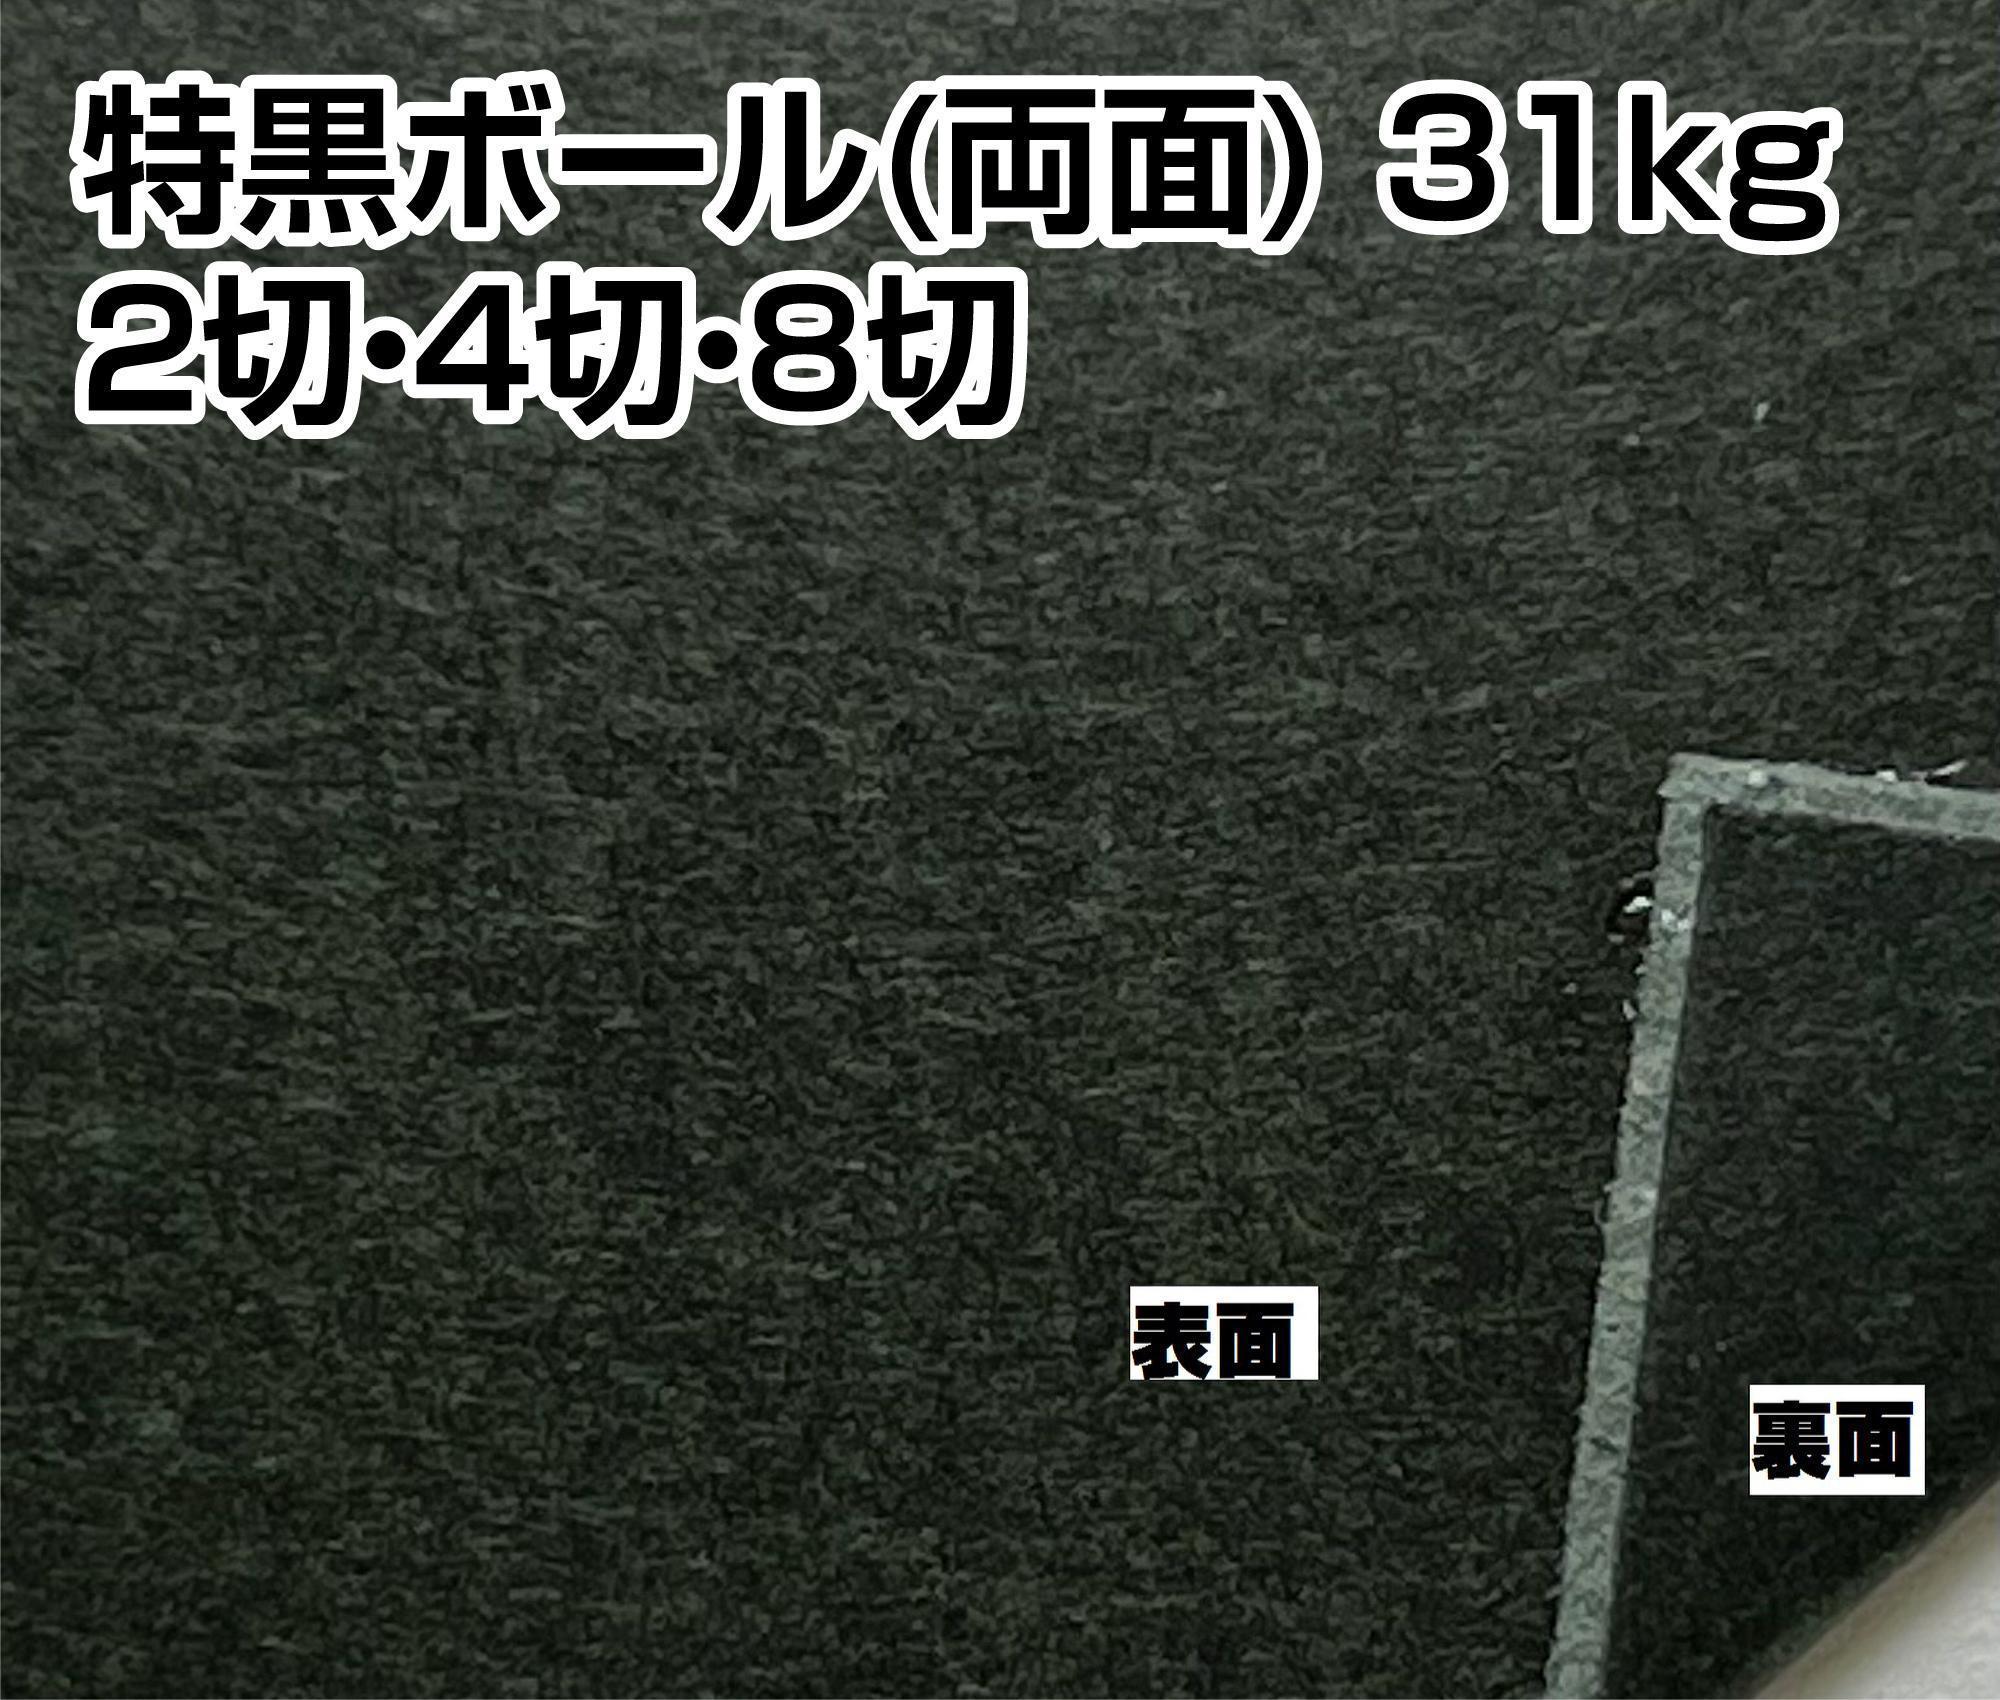 特黒ボール(両面) 31kg(350g/m2) 全紙/2切/4切/8切